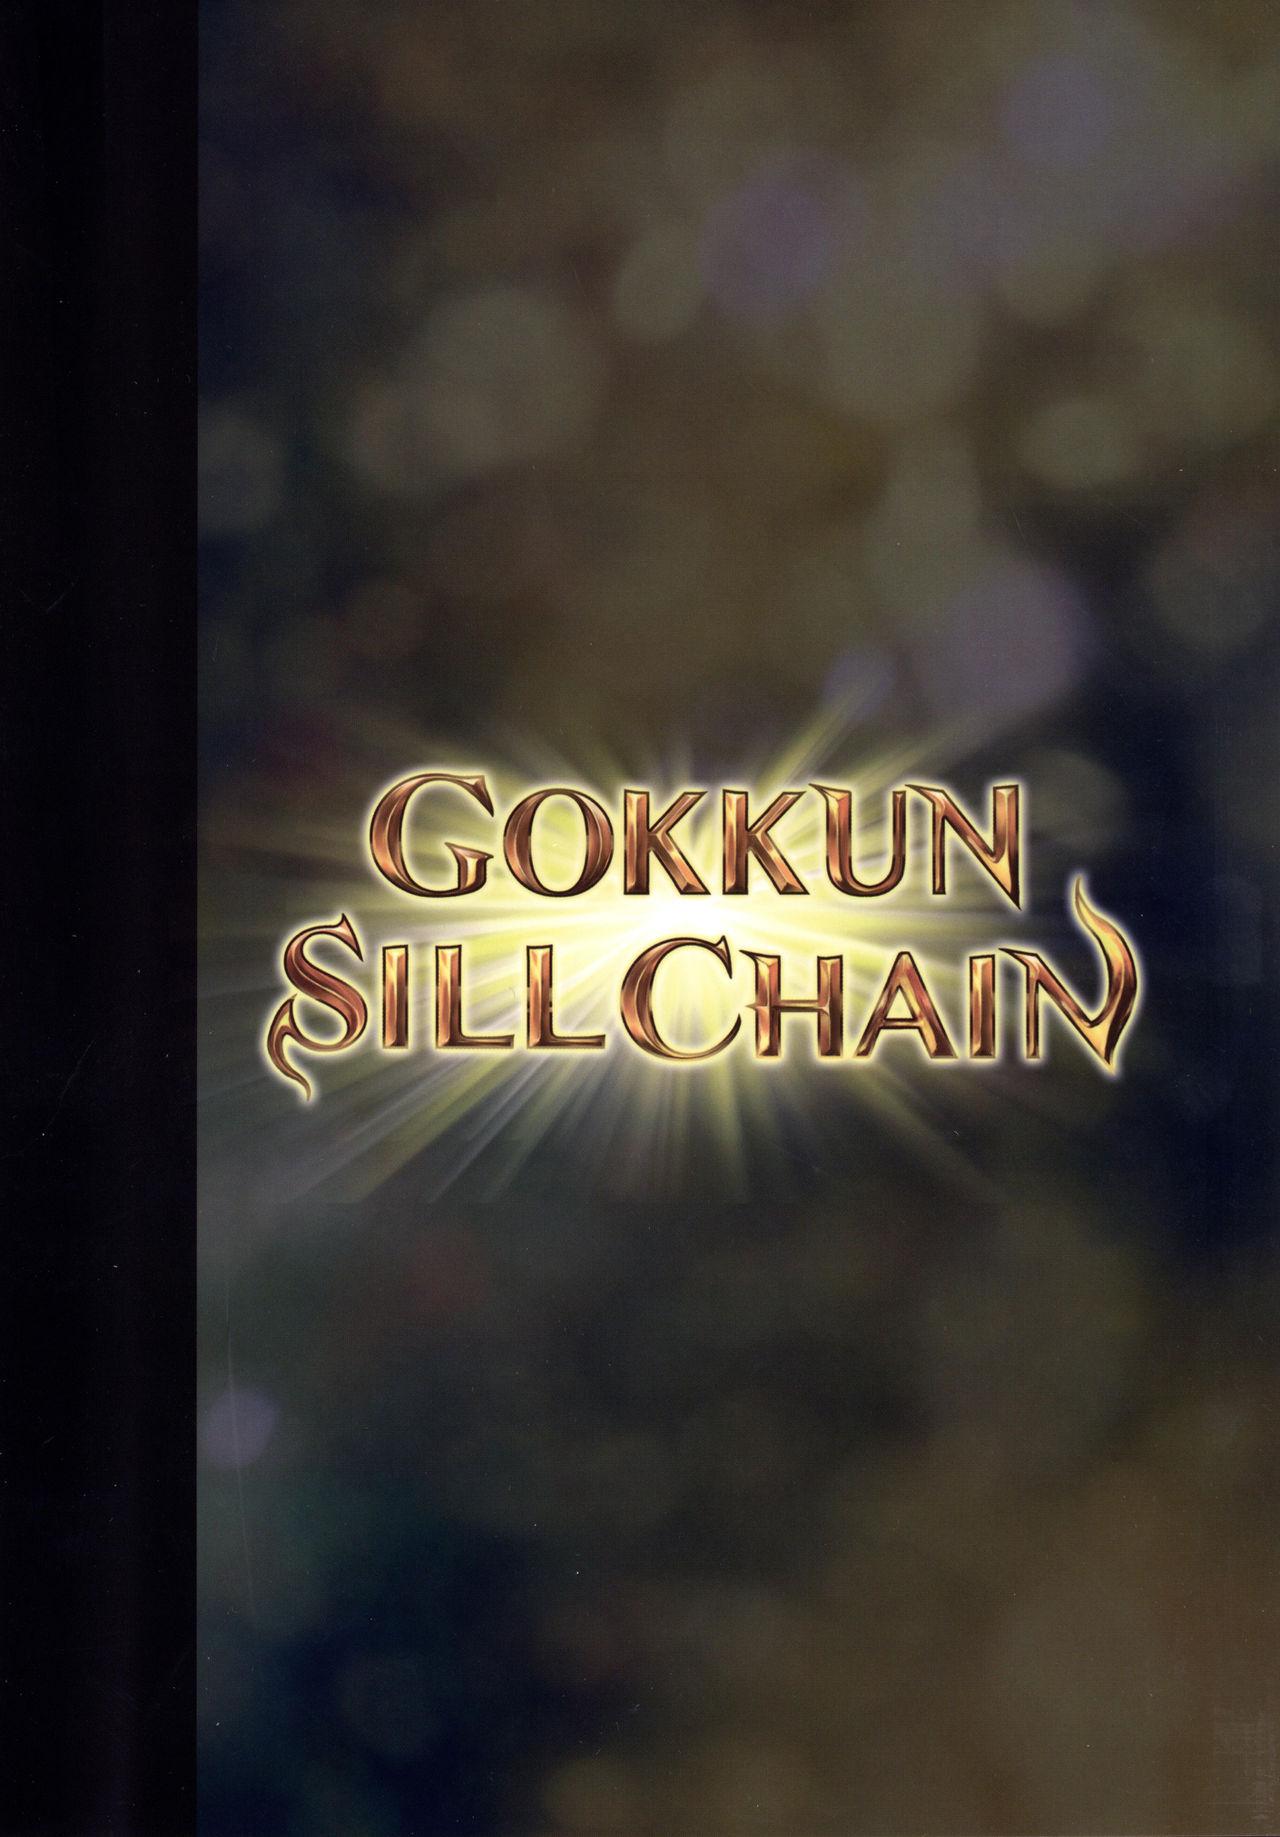 GOKKUN SILL CHAIN 19